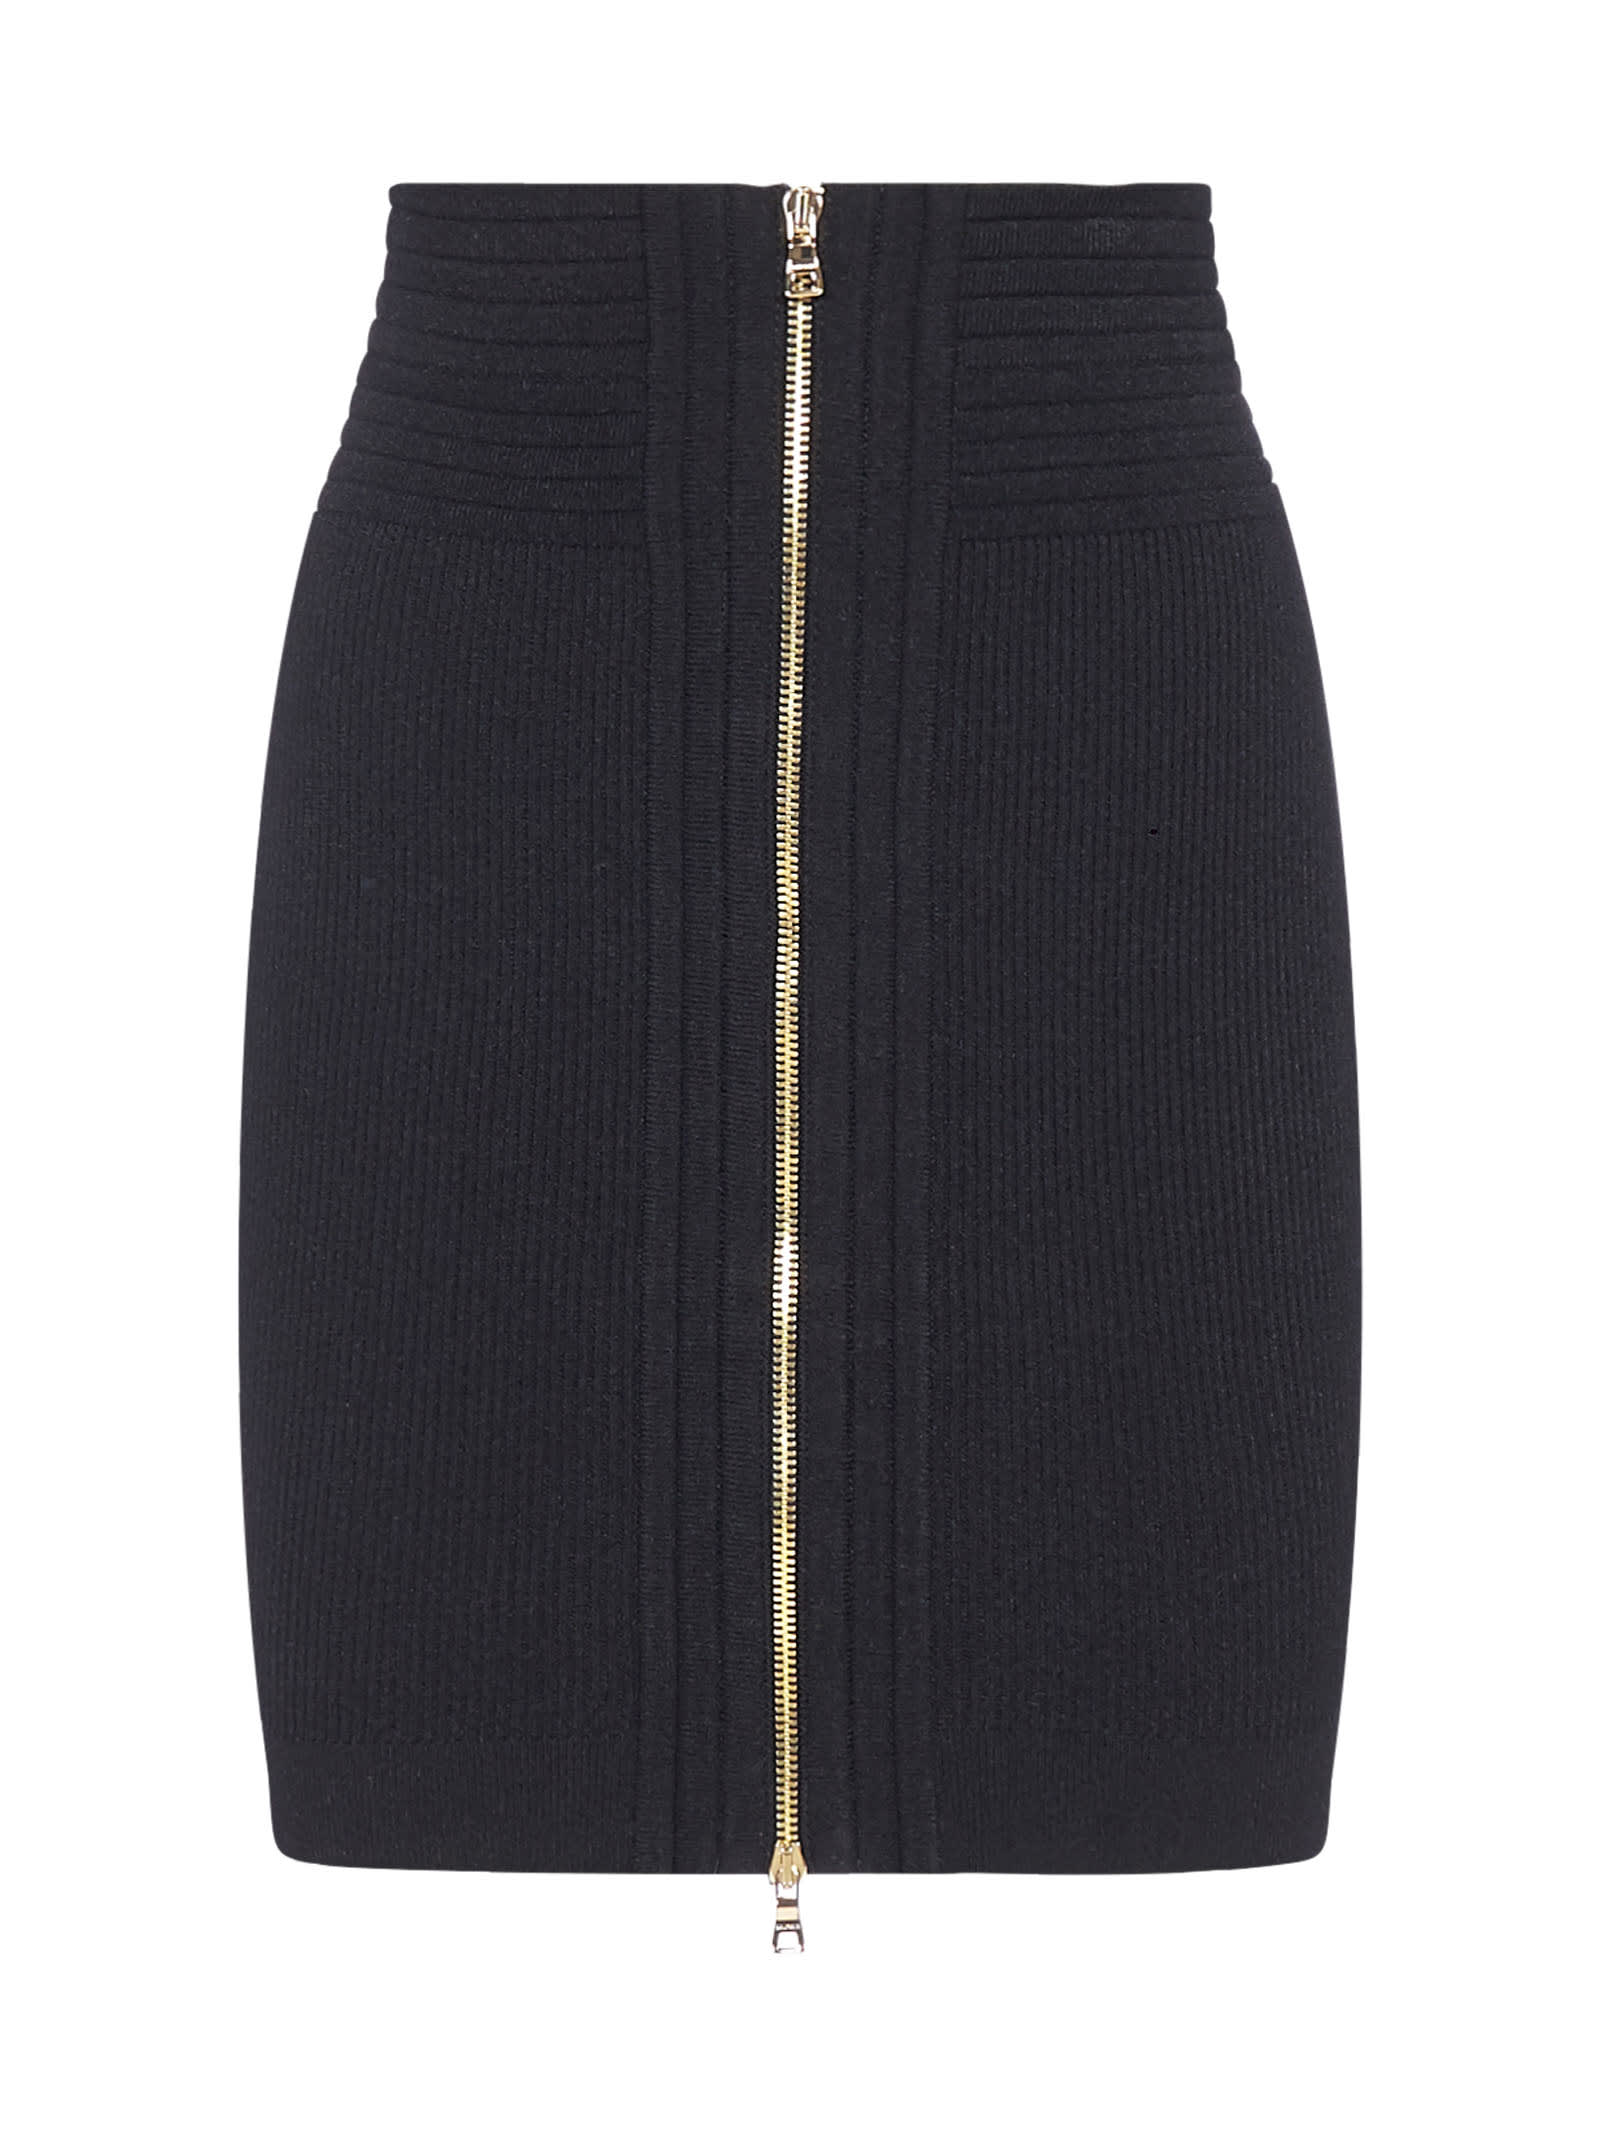 Balmain Zipped Stretch Knit Miniskirt